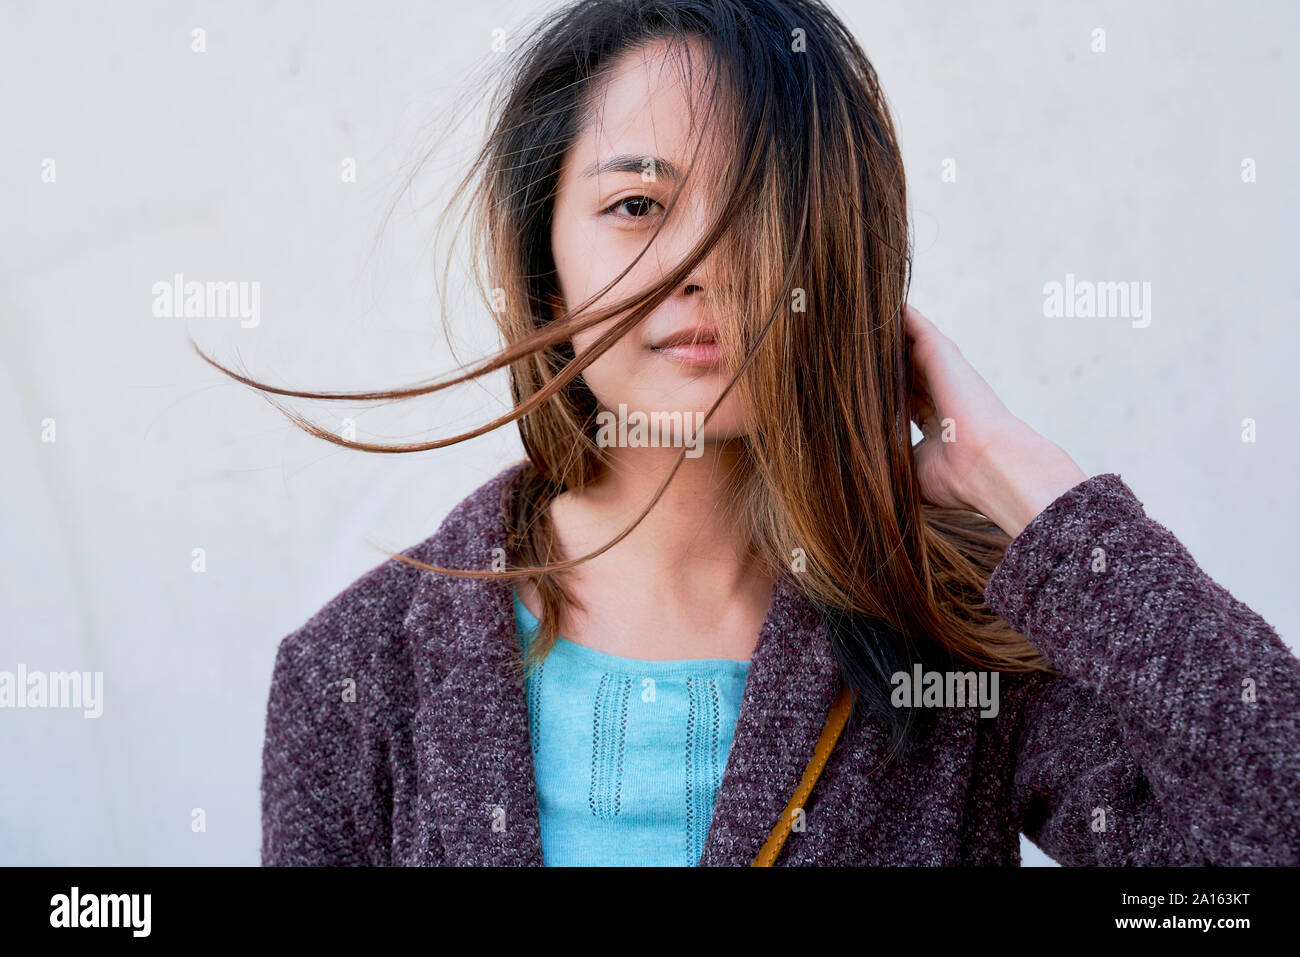 Ritratto di donna con capelli spazzate dal vento Foto Stock